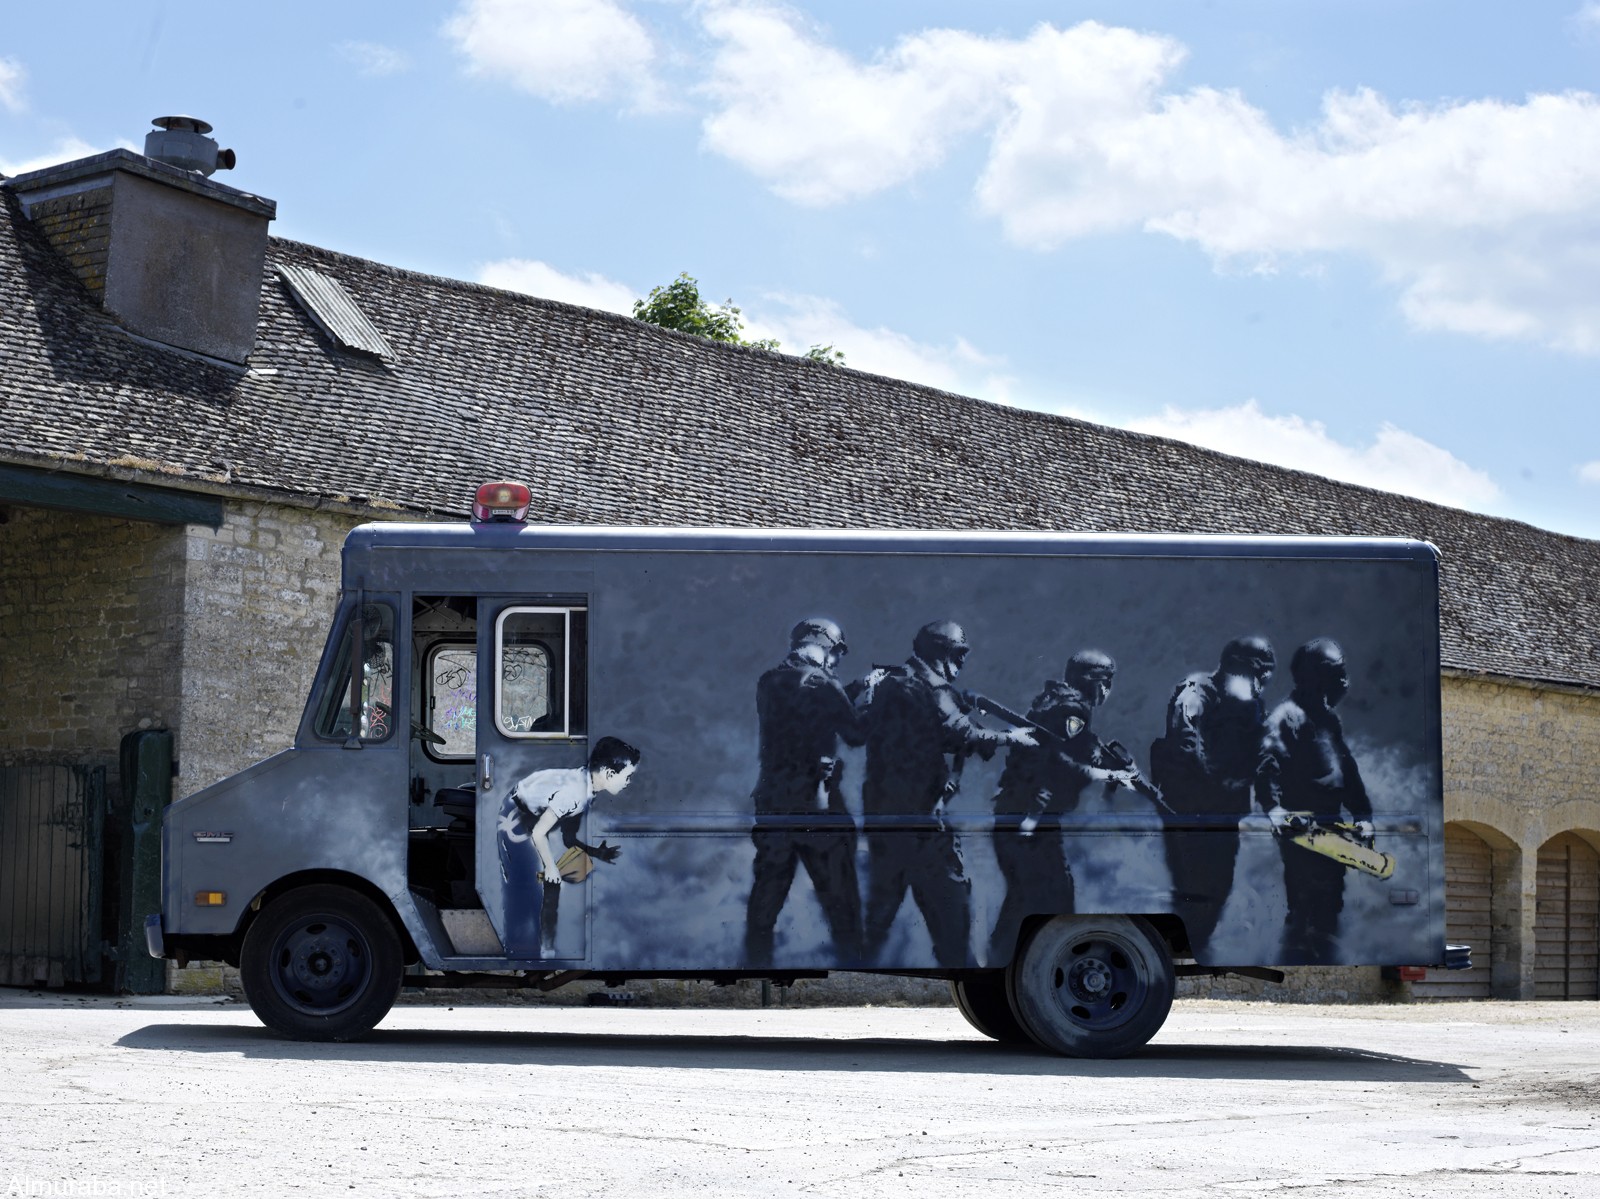 عرض سيارة نقل بانكسي الفنية المشهورة في مزاد بلندن